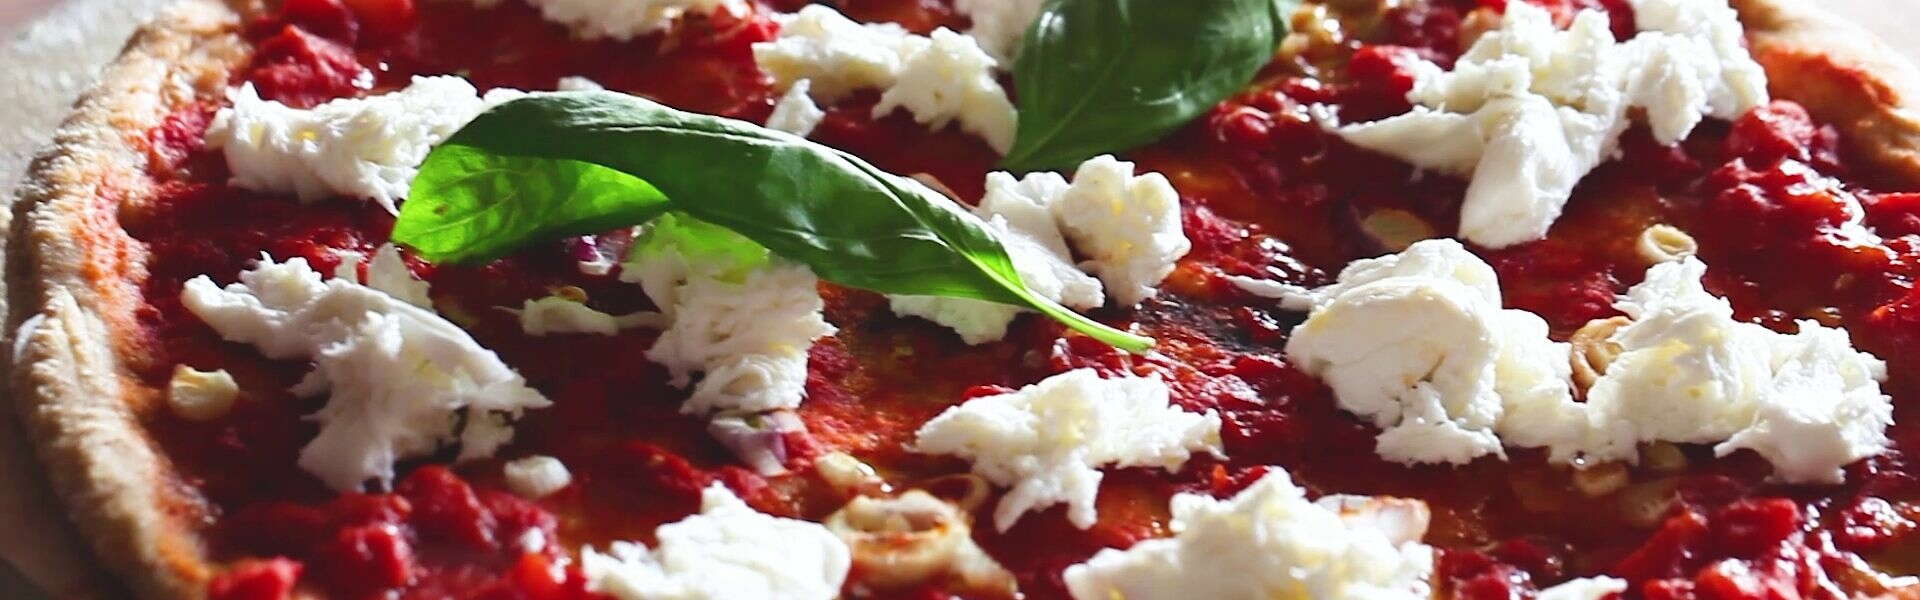 Receta de salud | Receta de pizza casera: rica, saludable y...¡deliciosa!